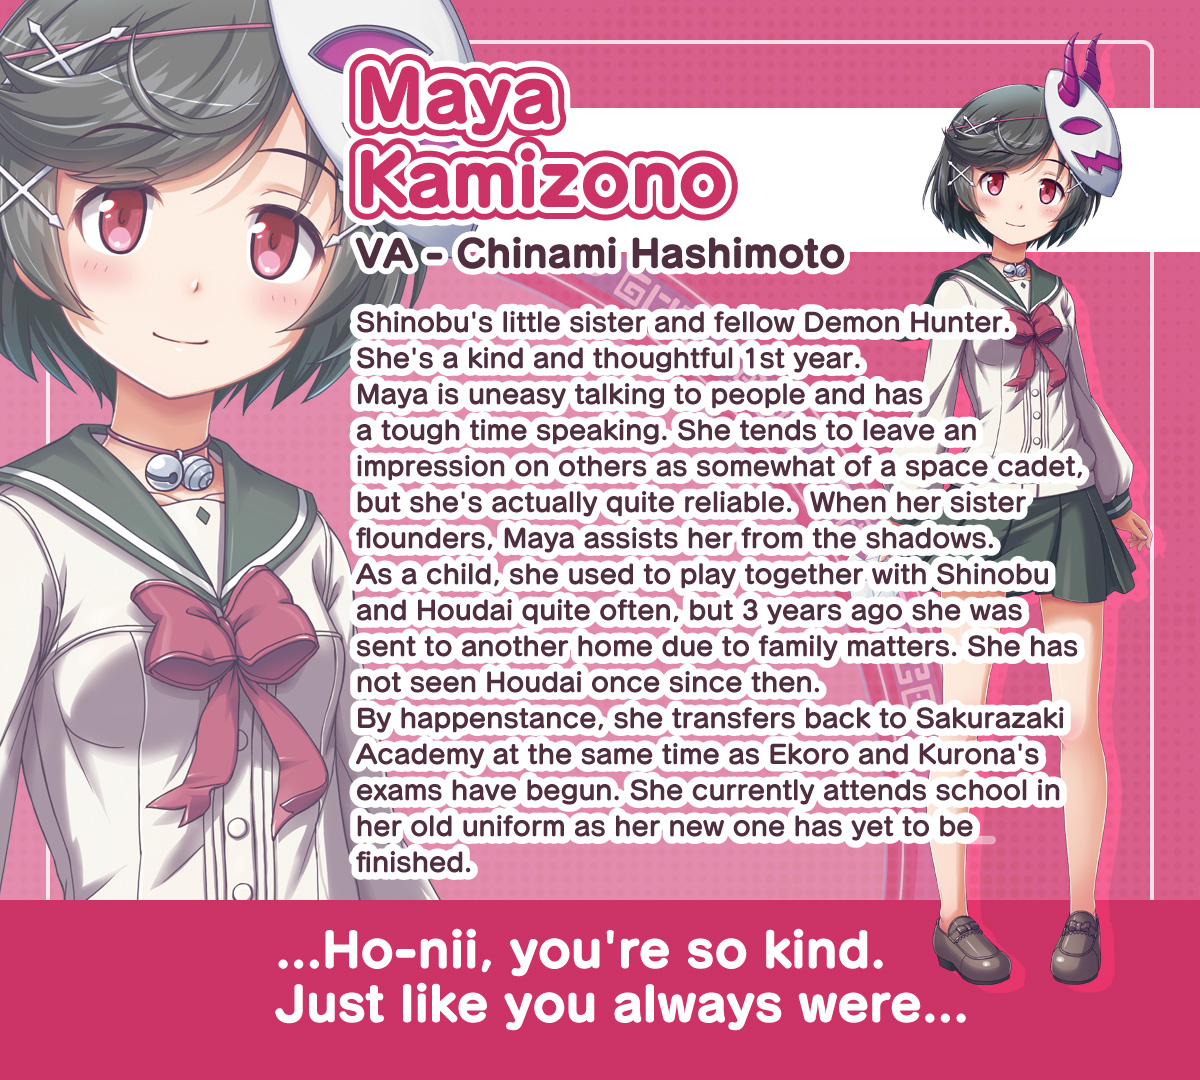 Maya Kamizono